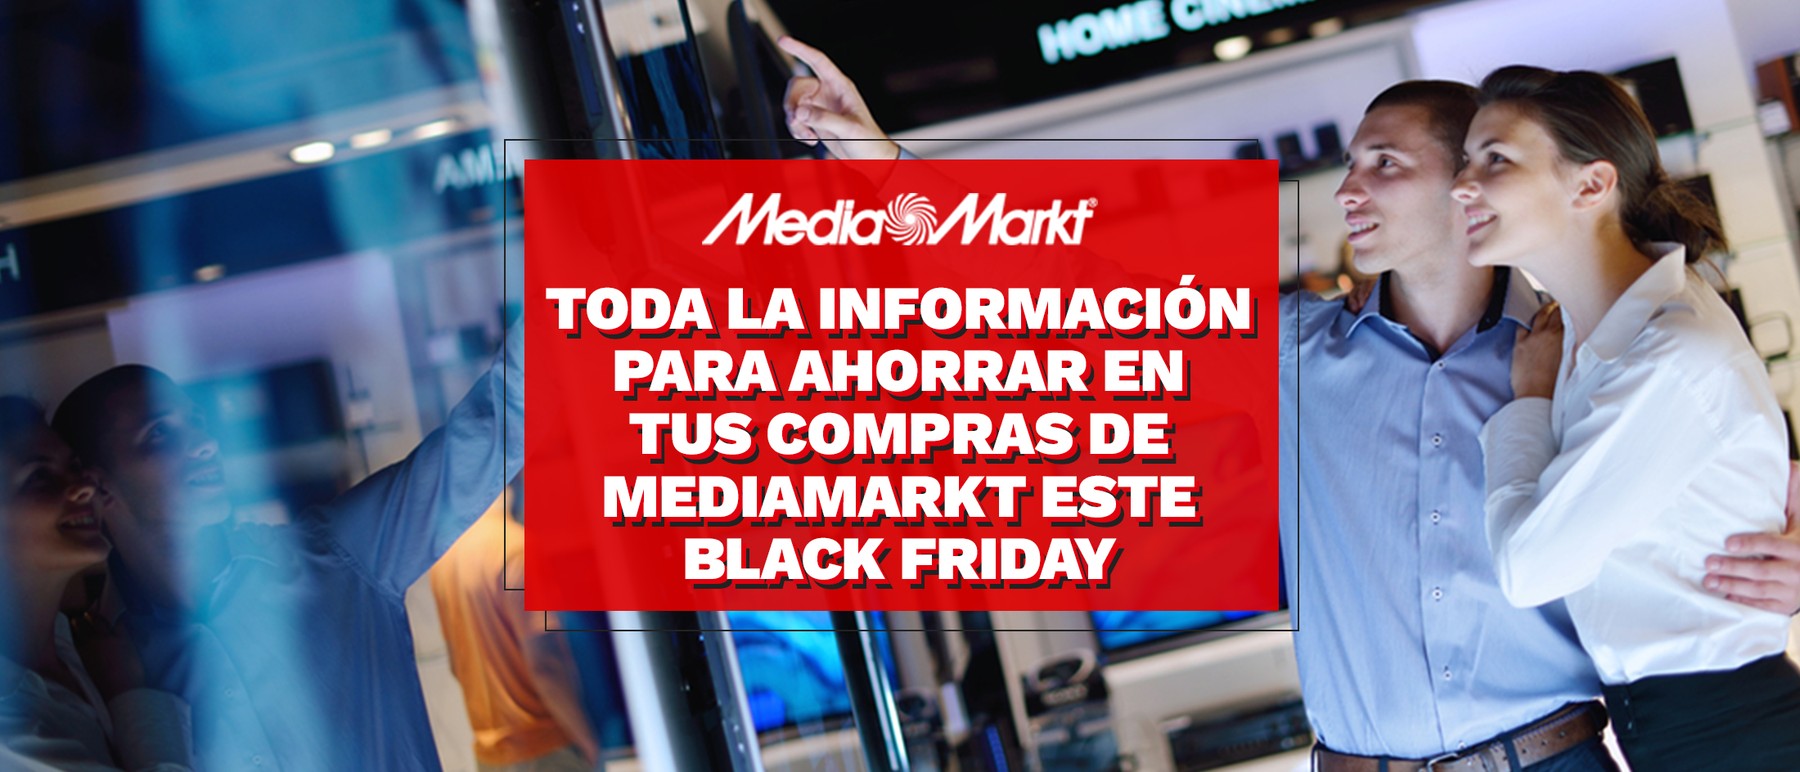 Consejos para ahorrar en tus compras en MediaMarkt este Black Friday